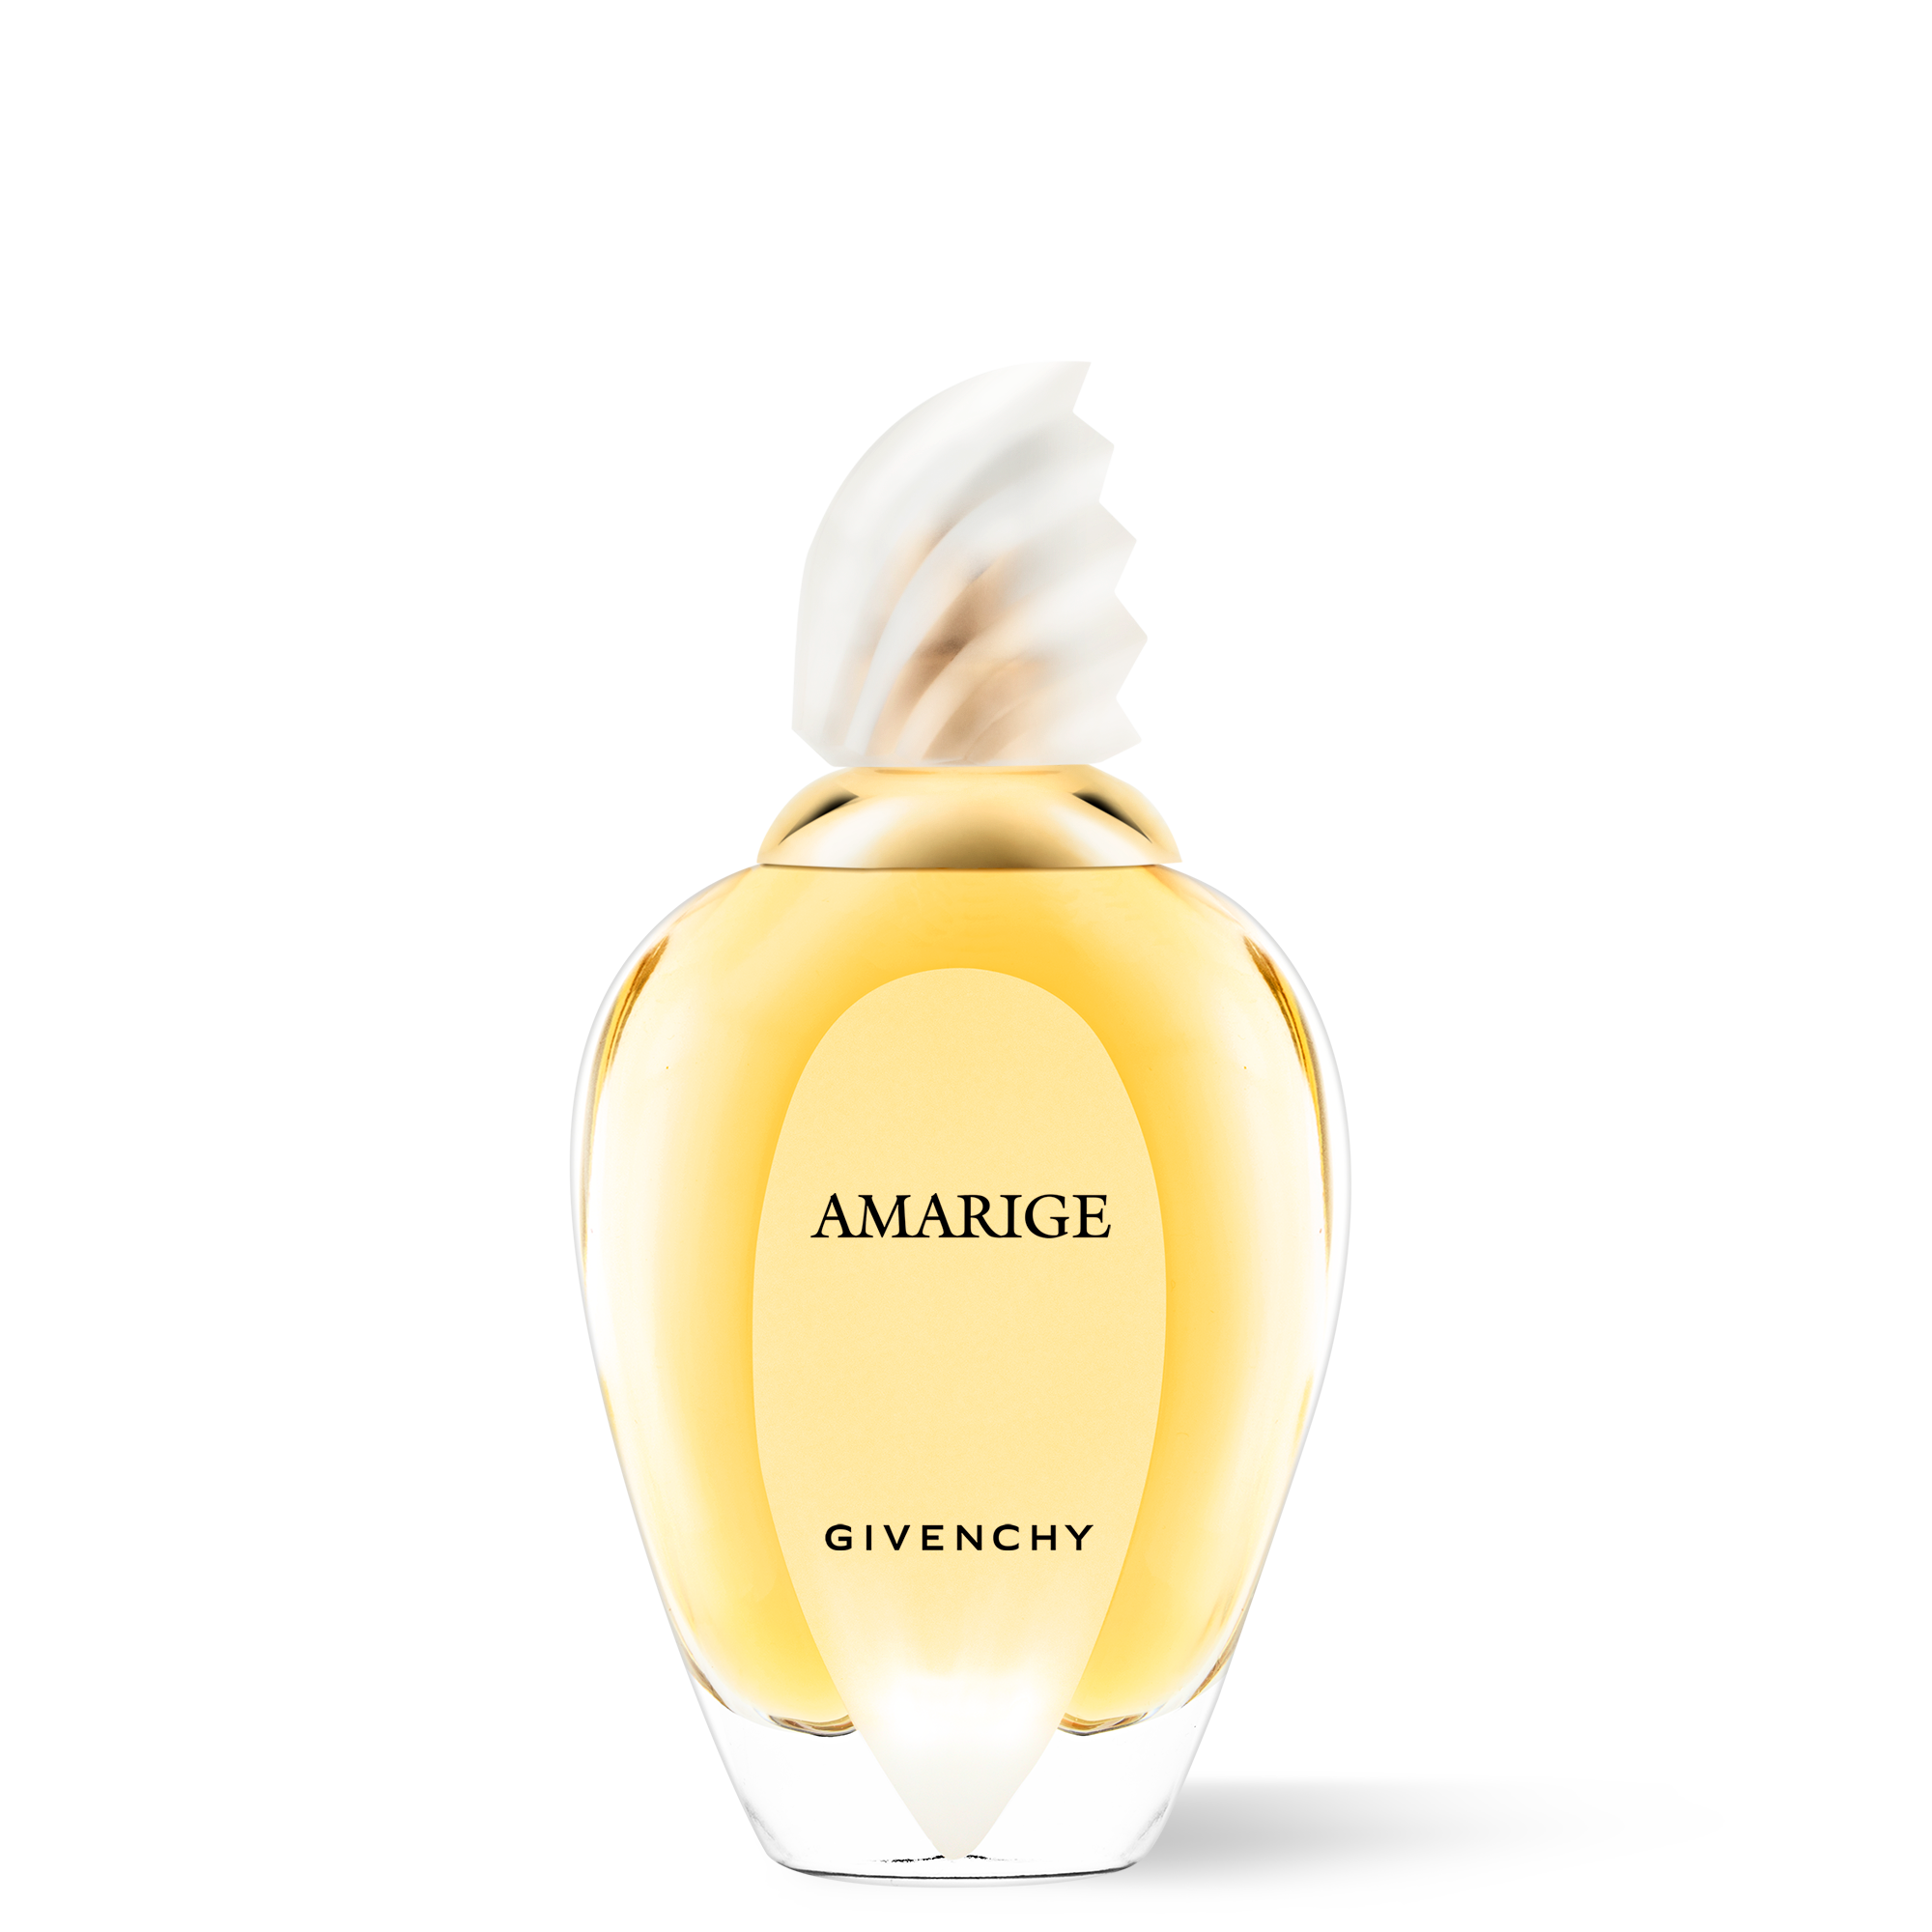 givenchy perfume amarige